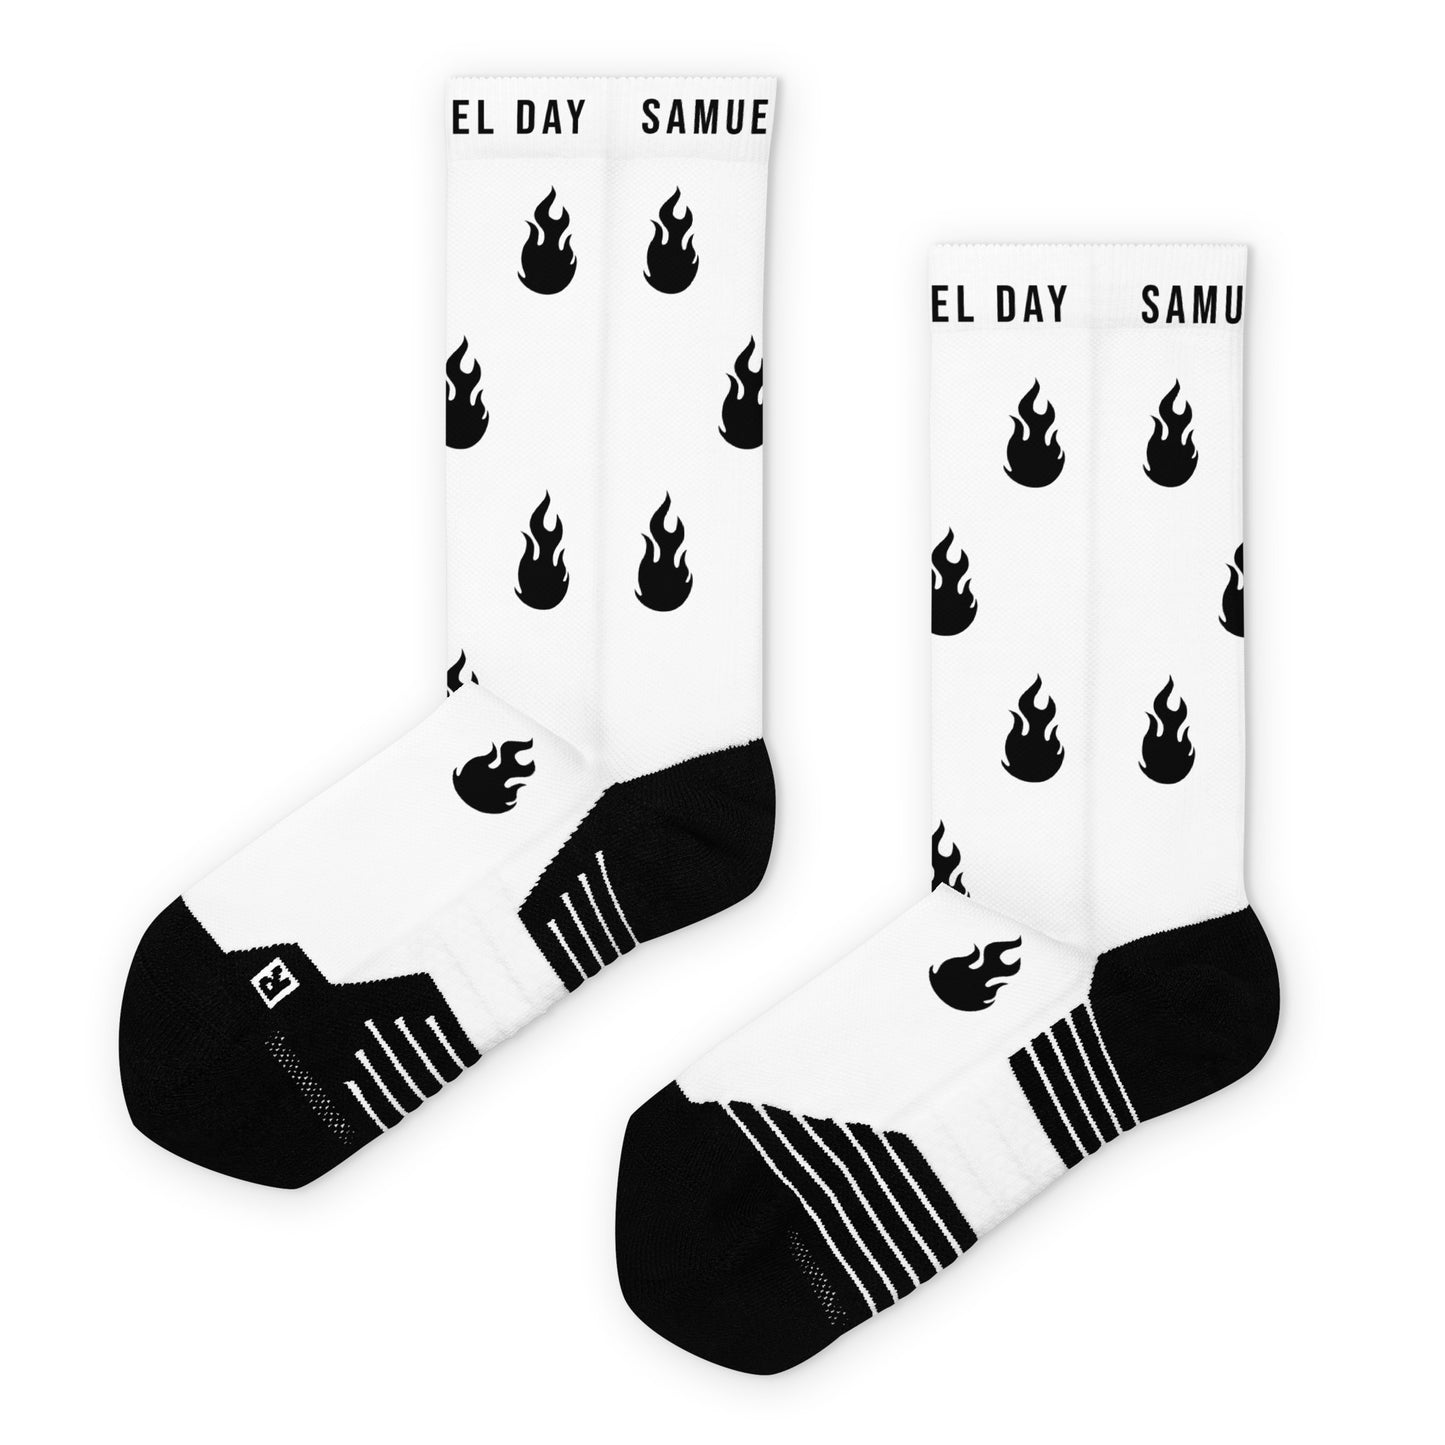 Flame Logo Basketball Socks